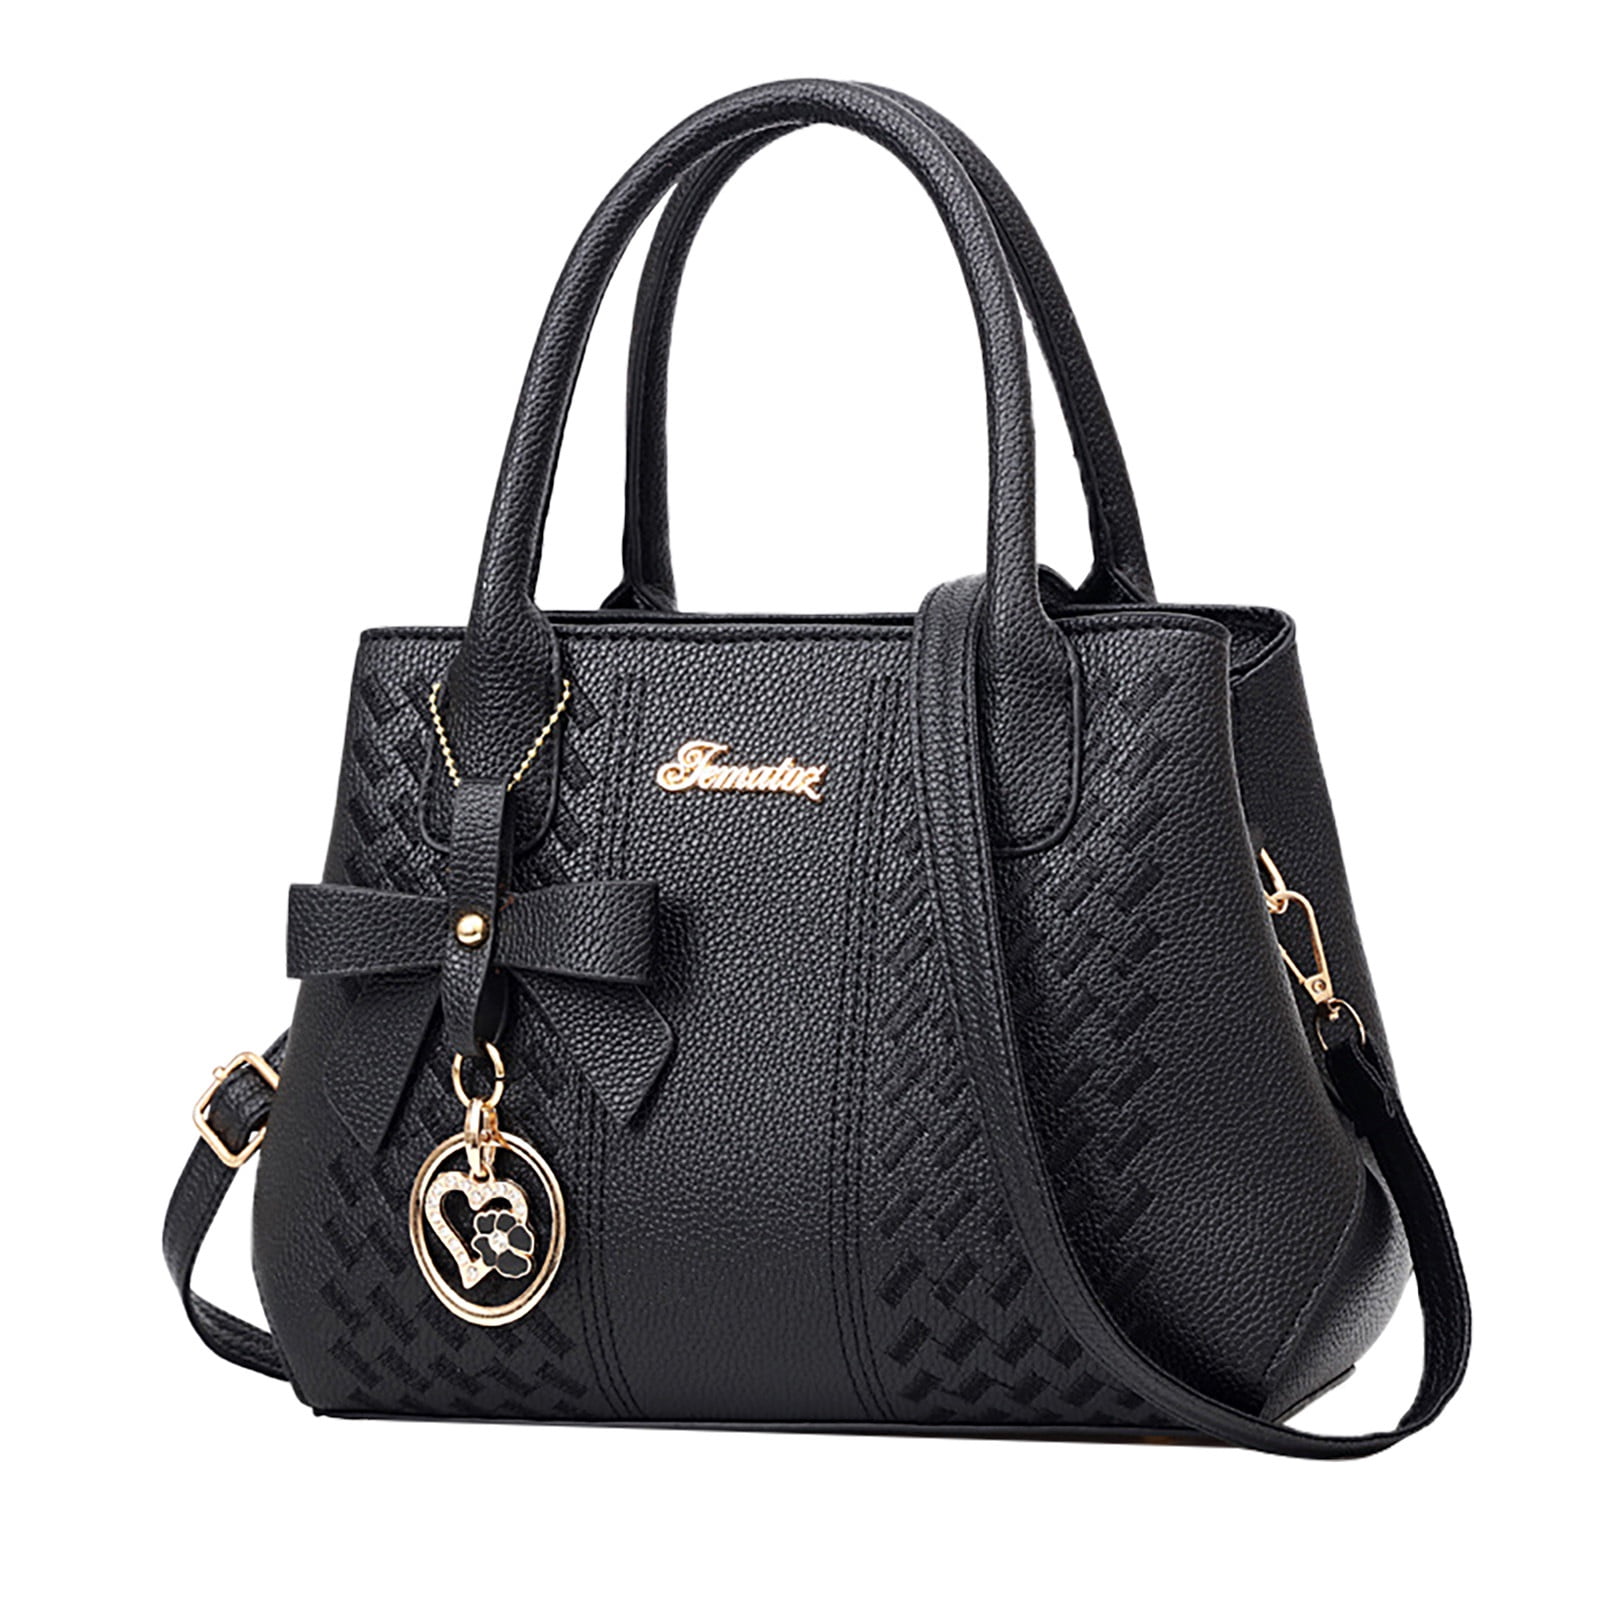 Zhaghmin Women's Classic European and American Fashion Mother Handbag